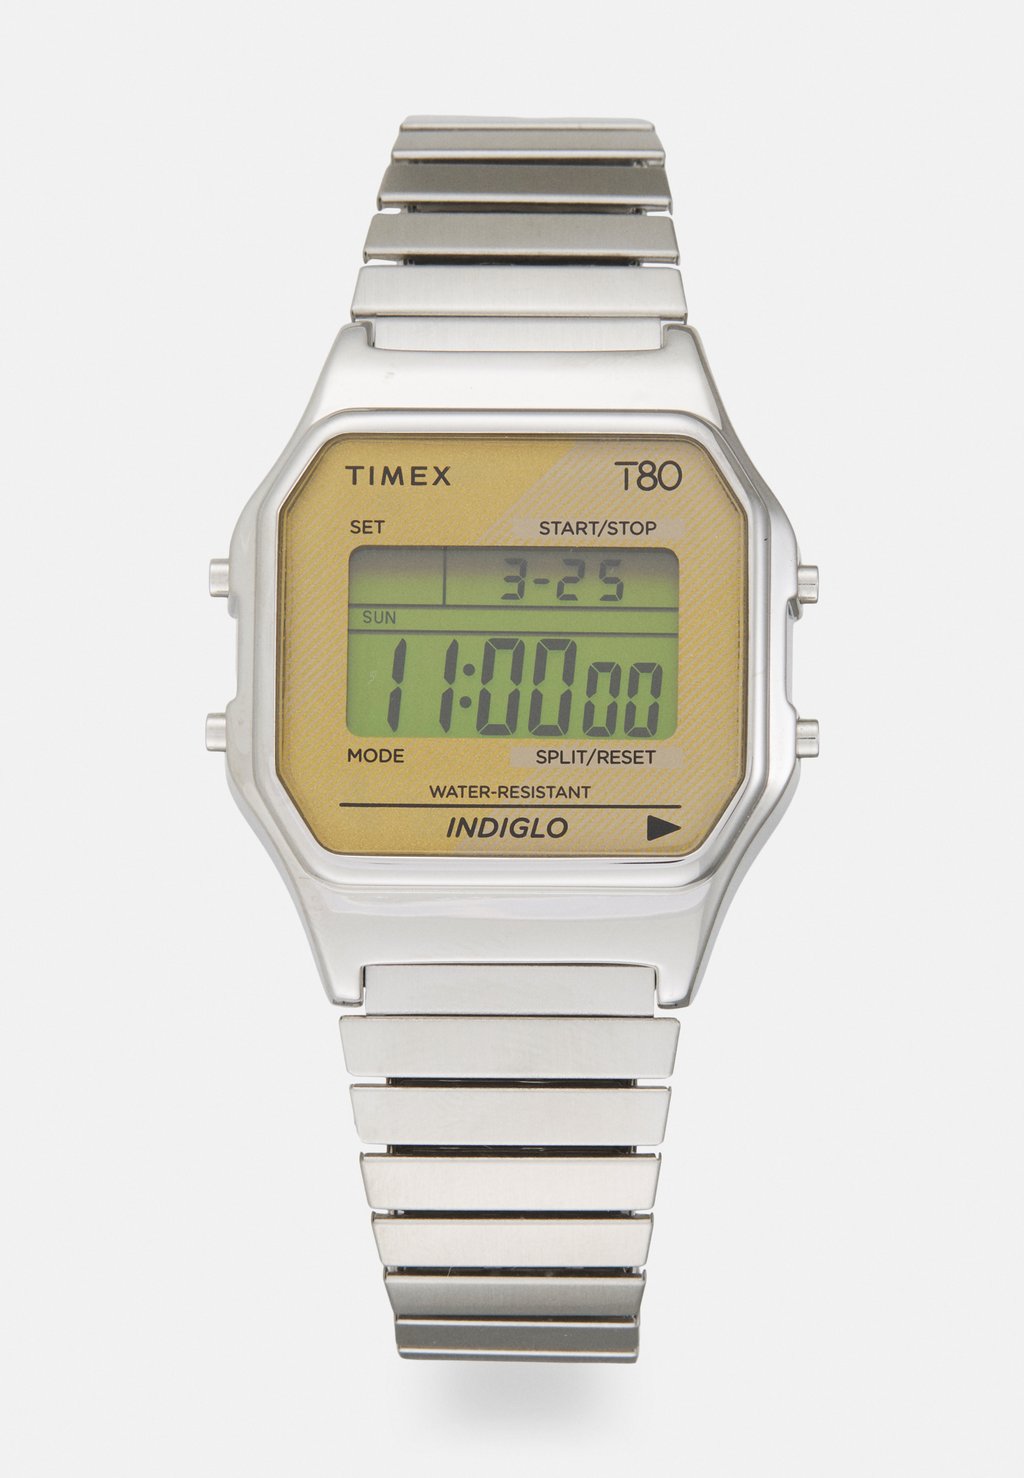 Цифровые часы T80 Unisex Timex, цвет silvertone/gold